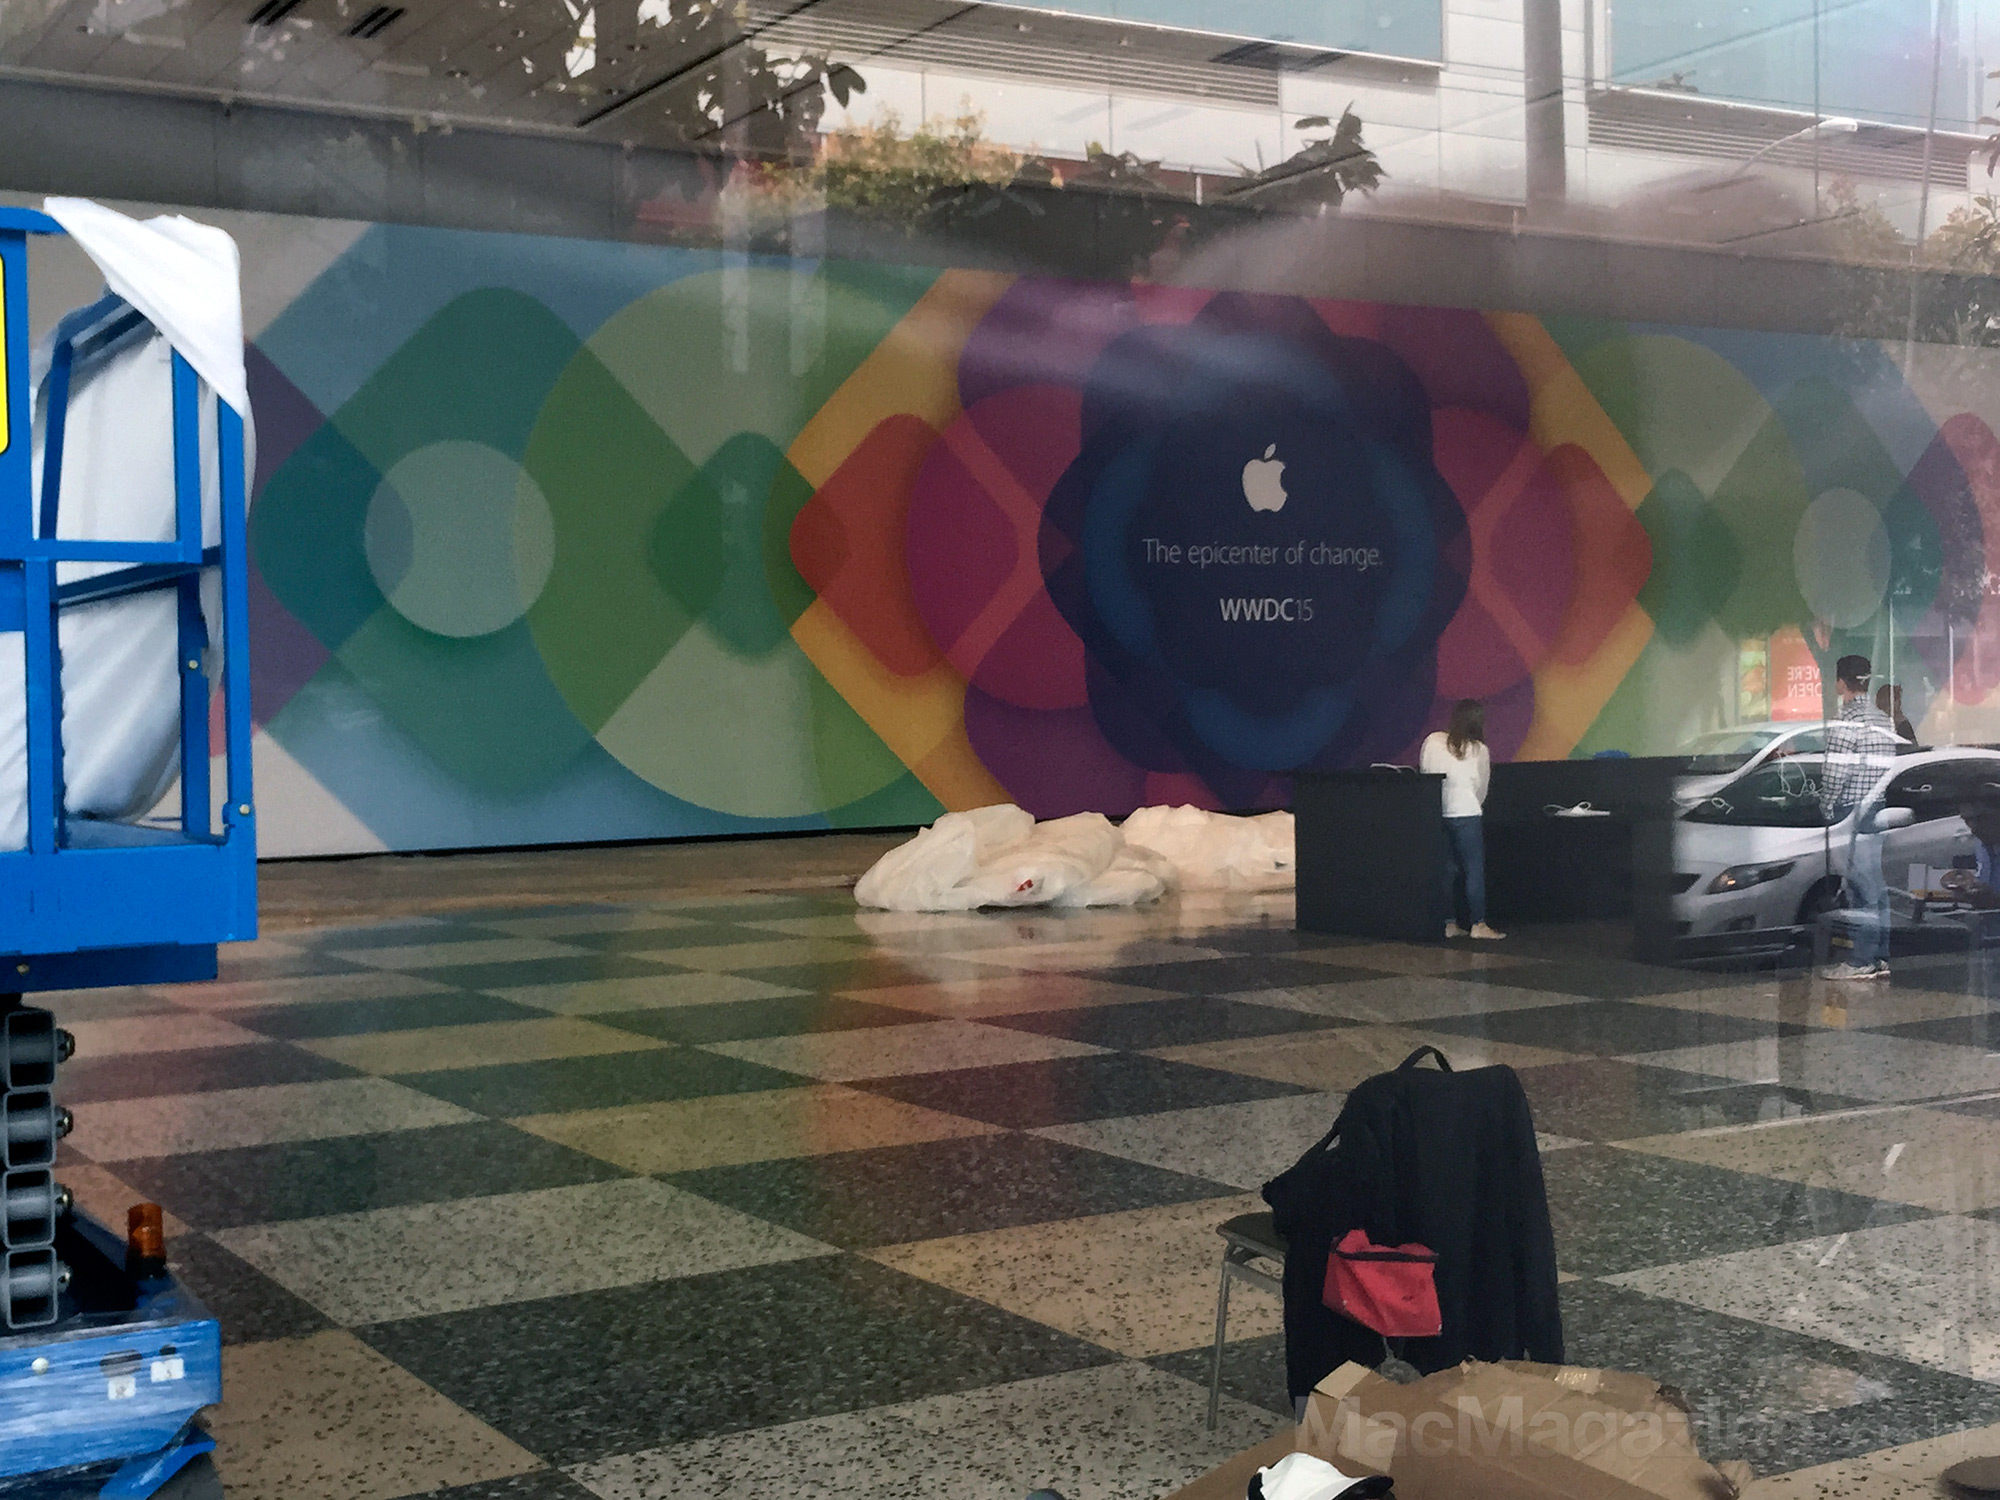 Moscone Center sendo preparado para a WWDC 2015